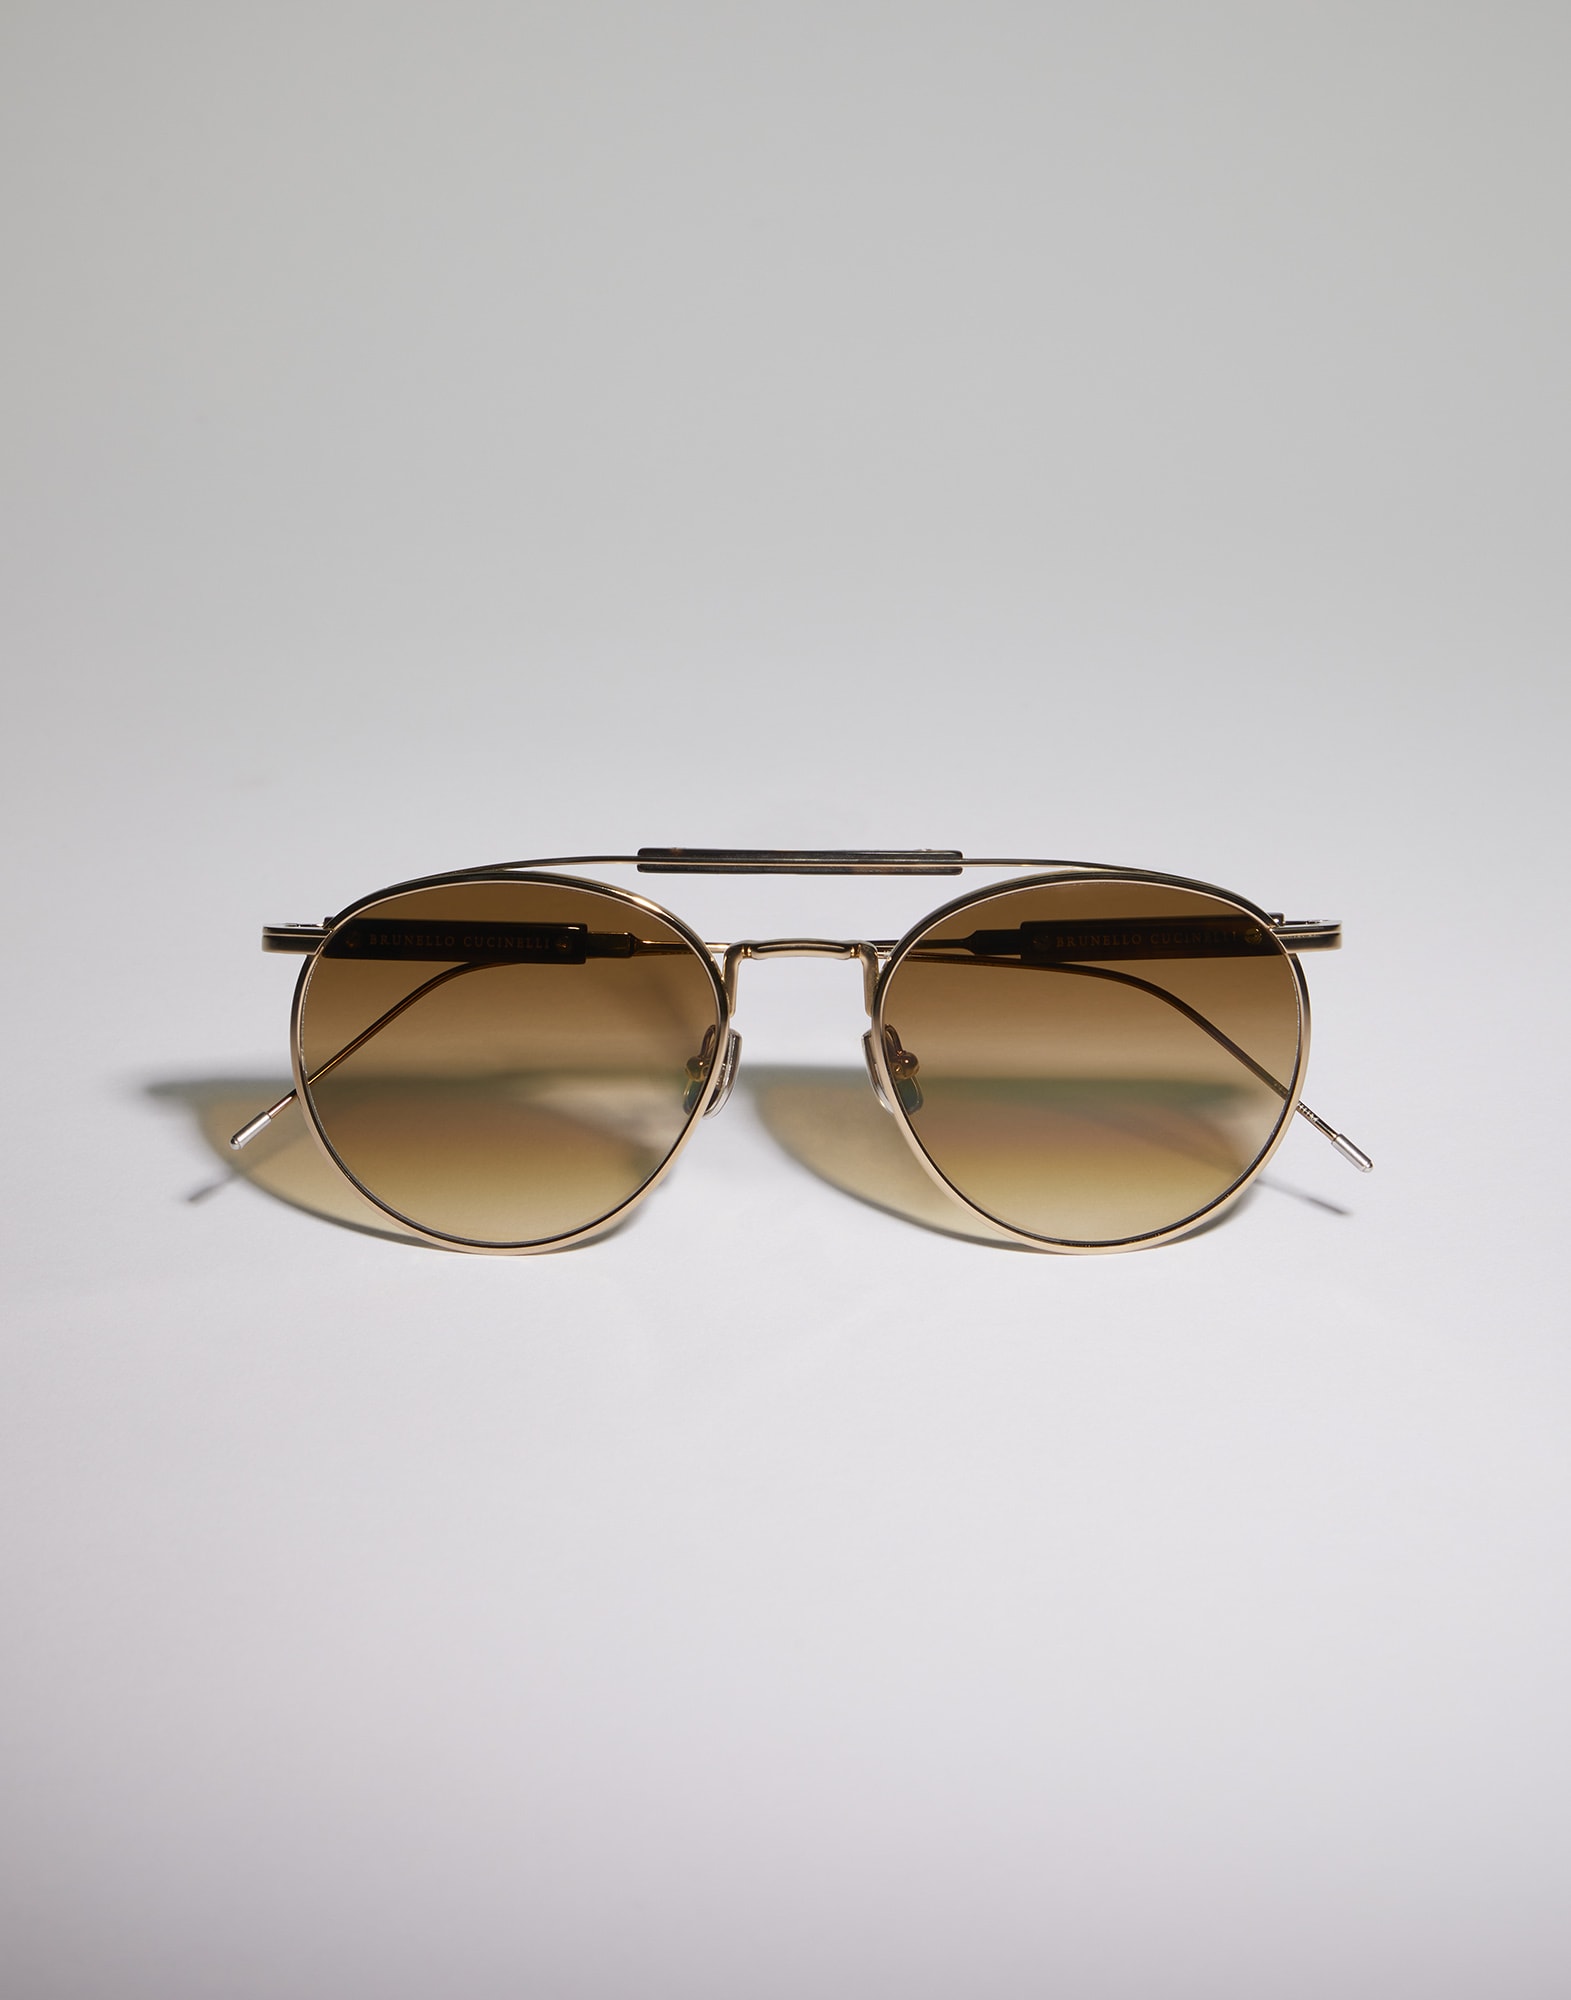 Солнцезащитные очки с позолотой Светлое Золото Очки -
                        Brunello Cucinelli
                    